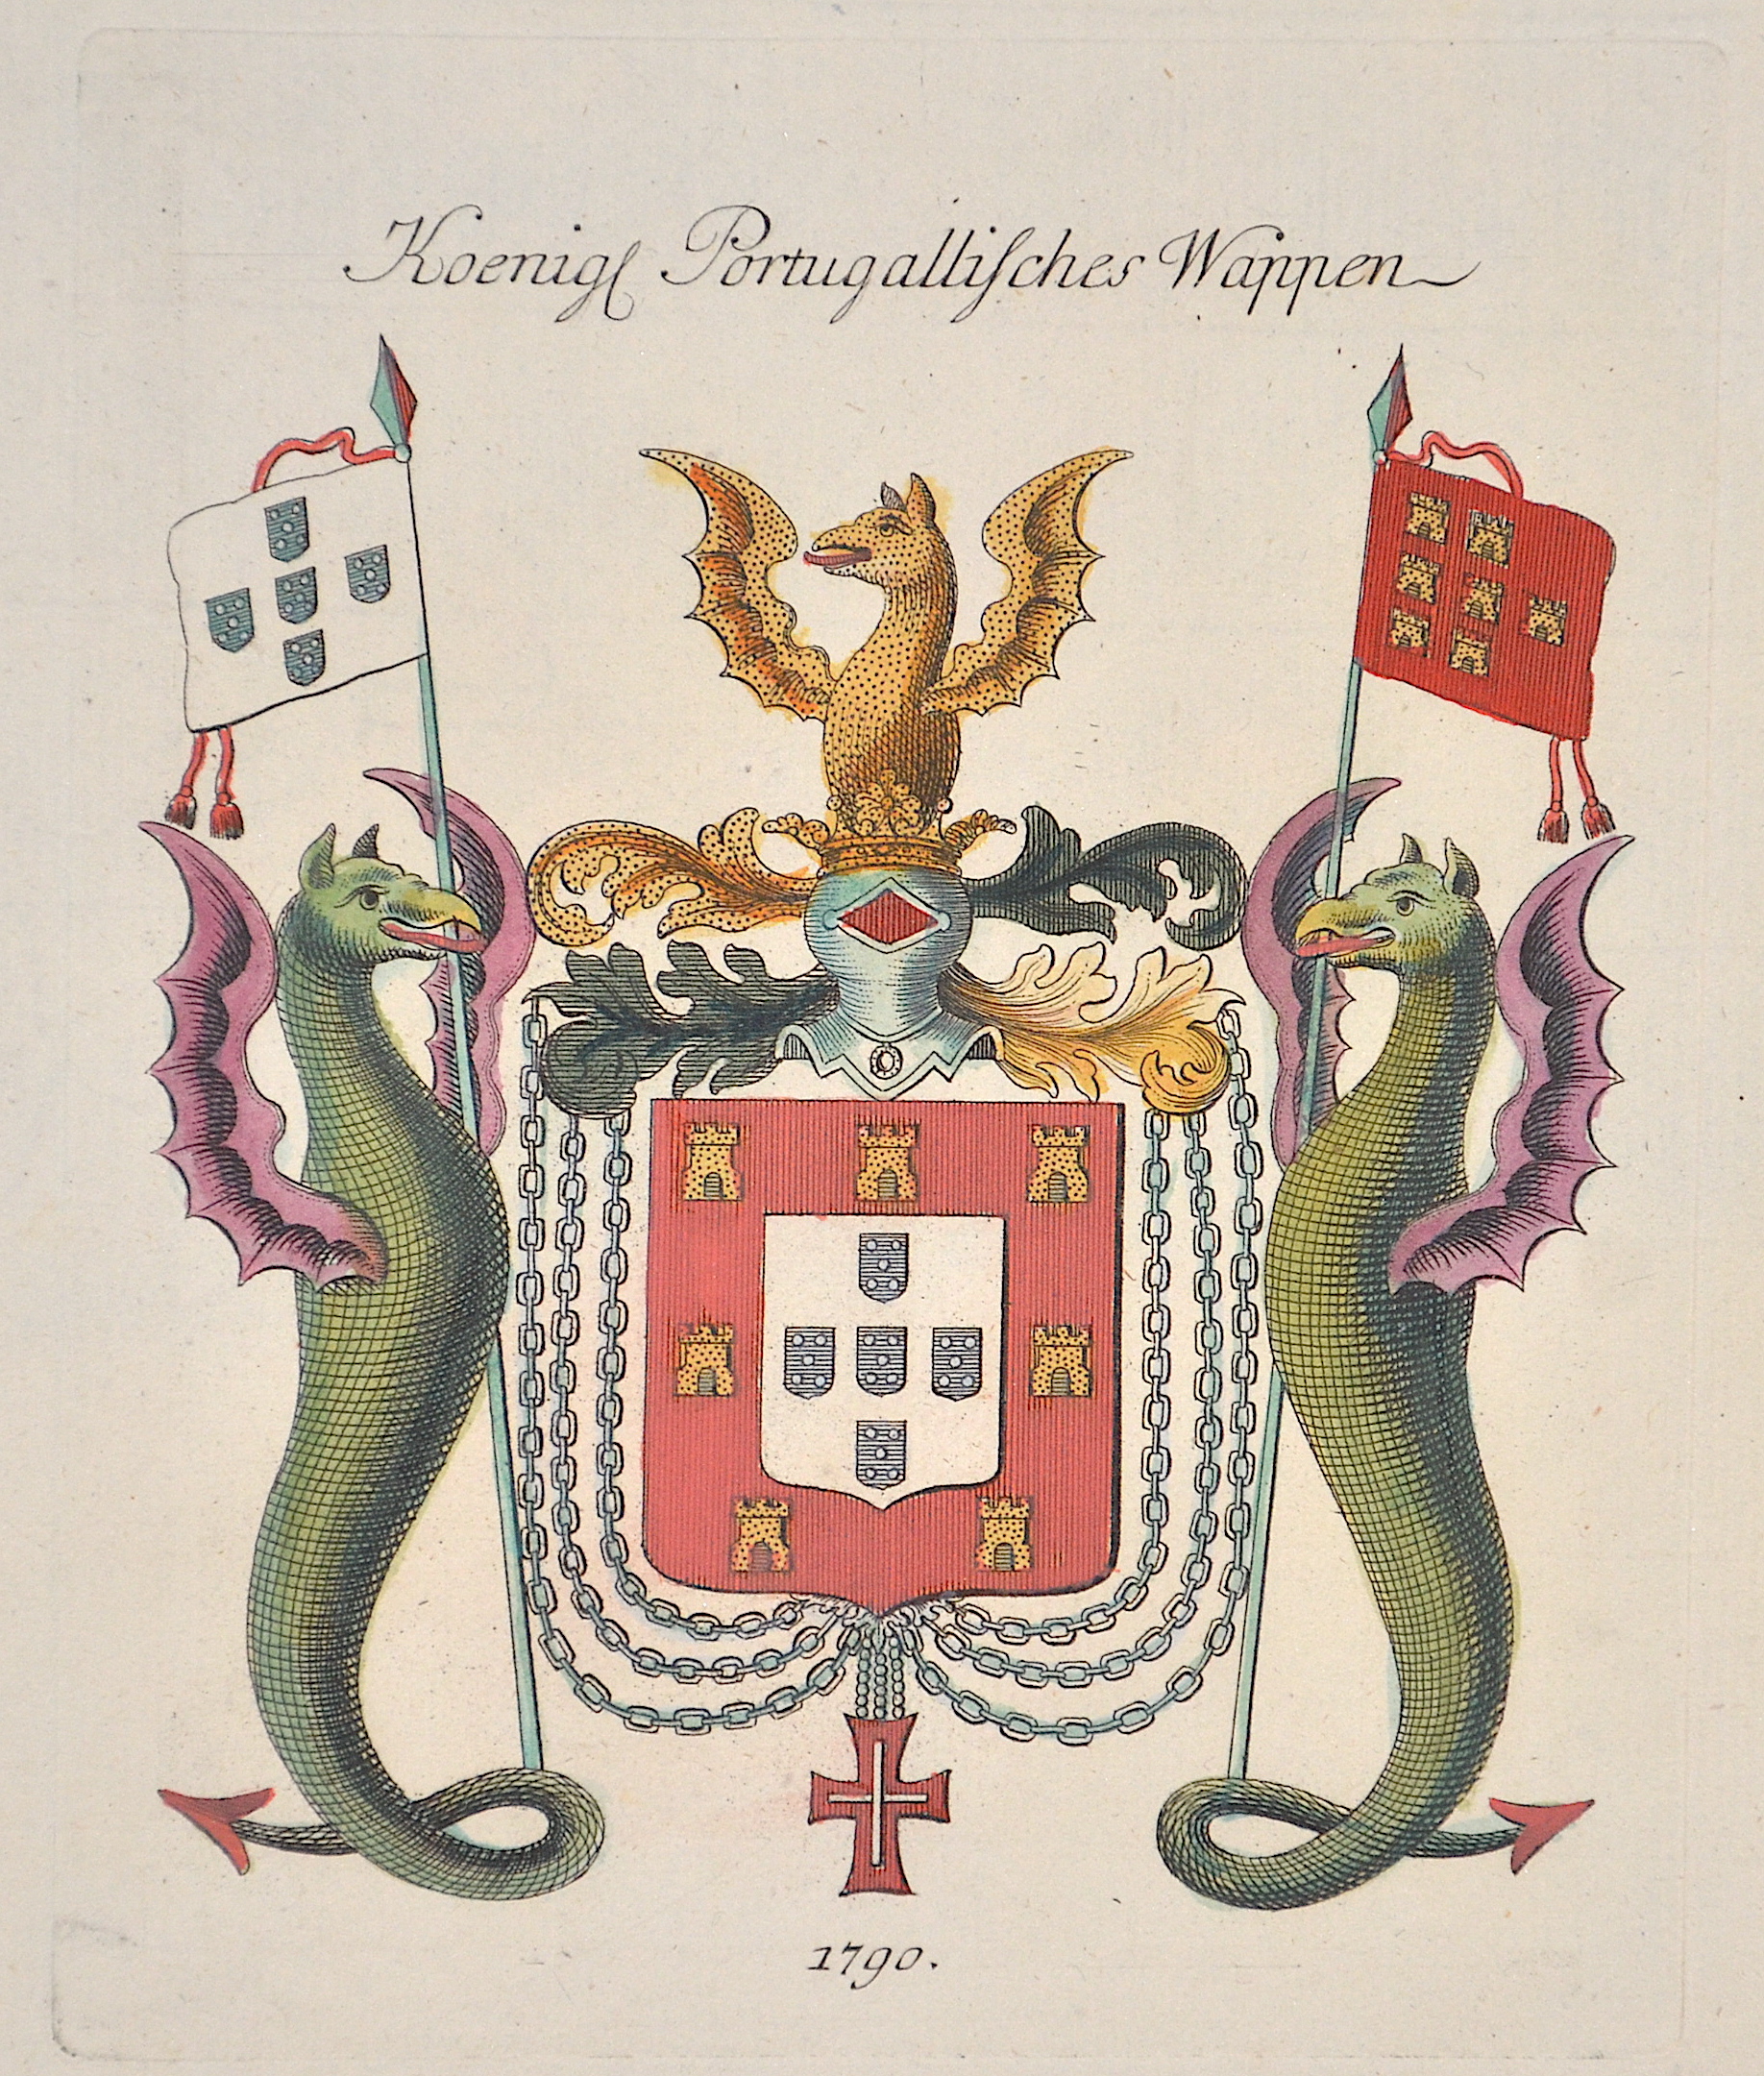 Anonymus  Koenigl Porugallisches Wappen 1790.